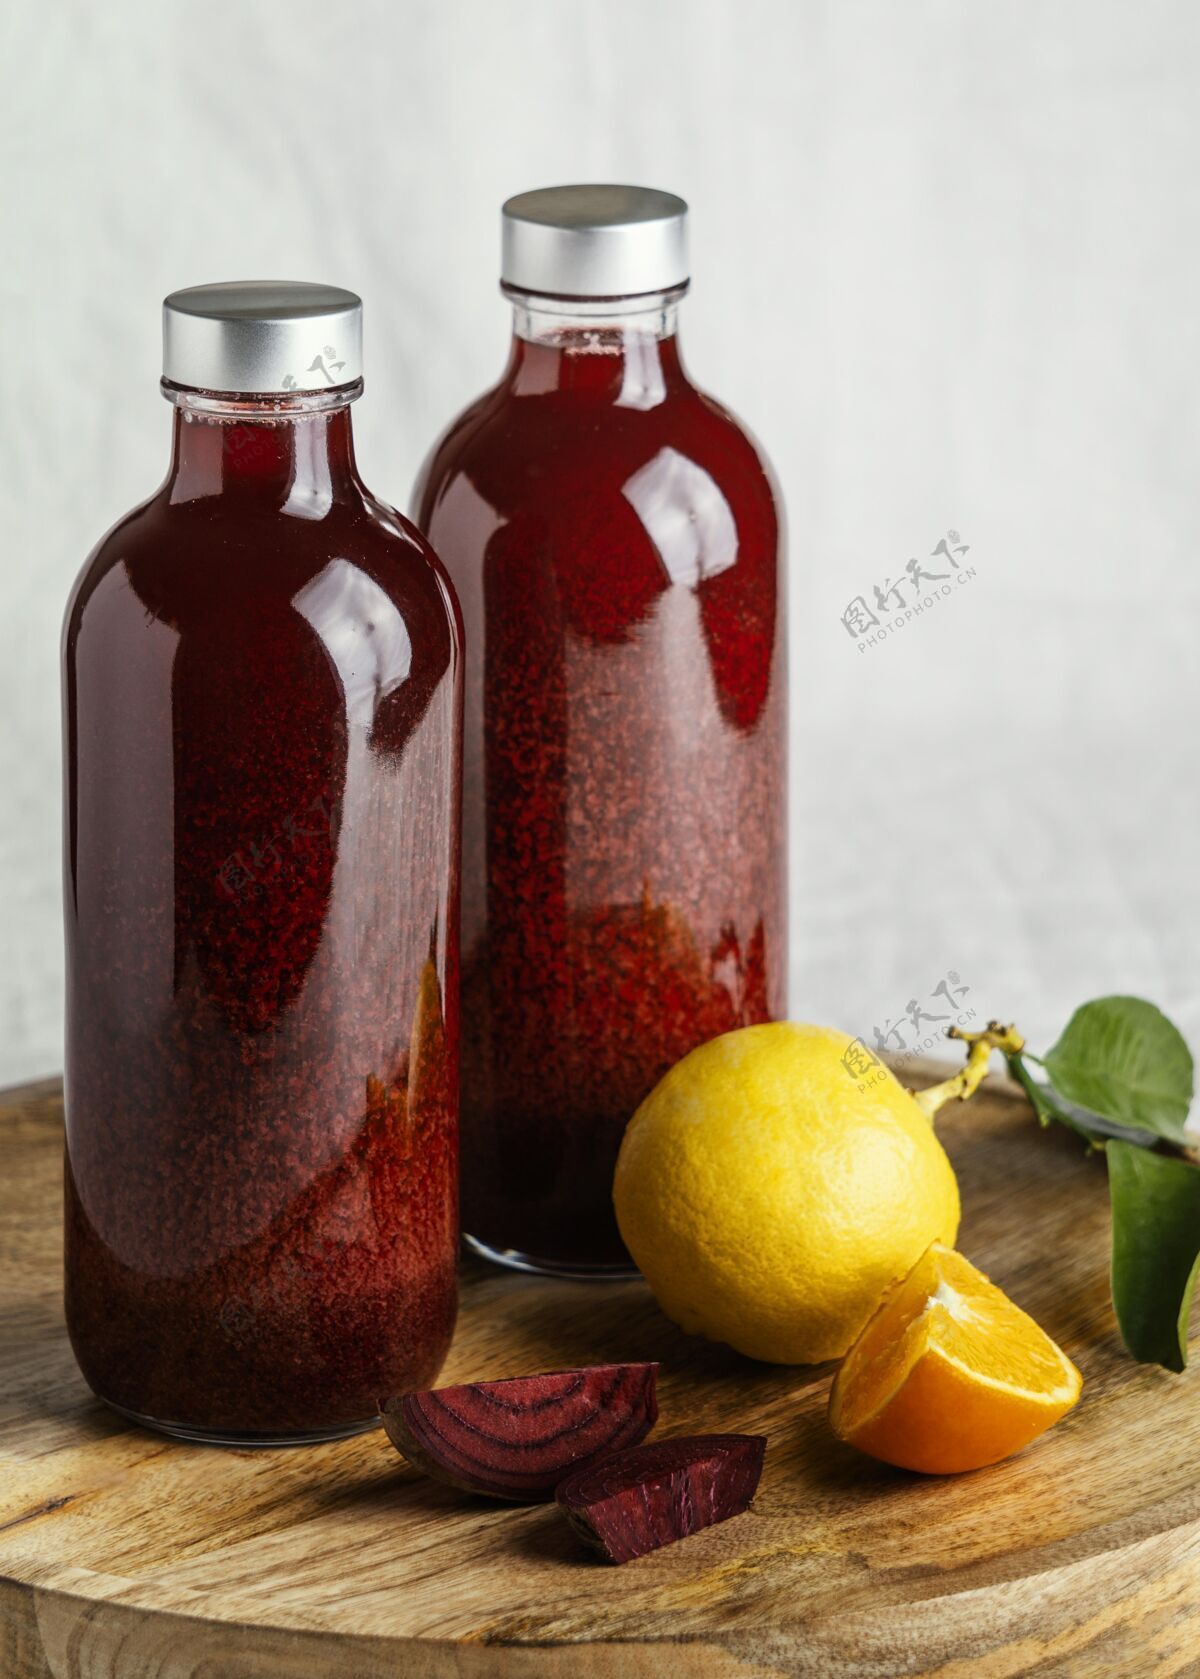 配料健康的红色饮料在玻璃瓶的安排提神食物不含酒精